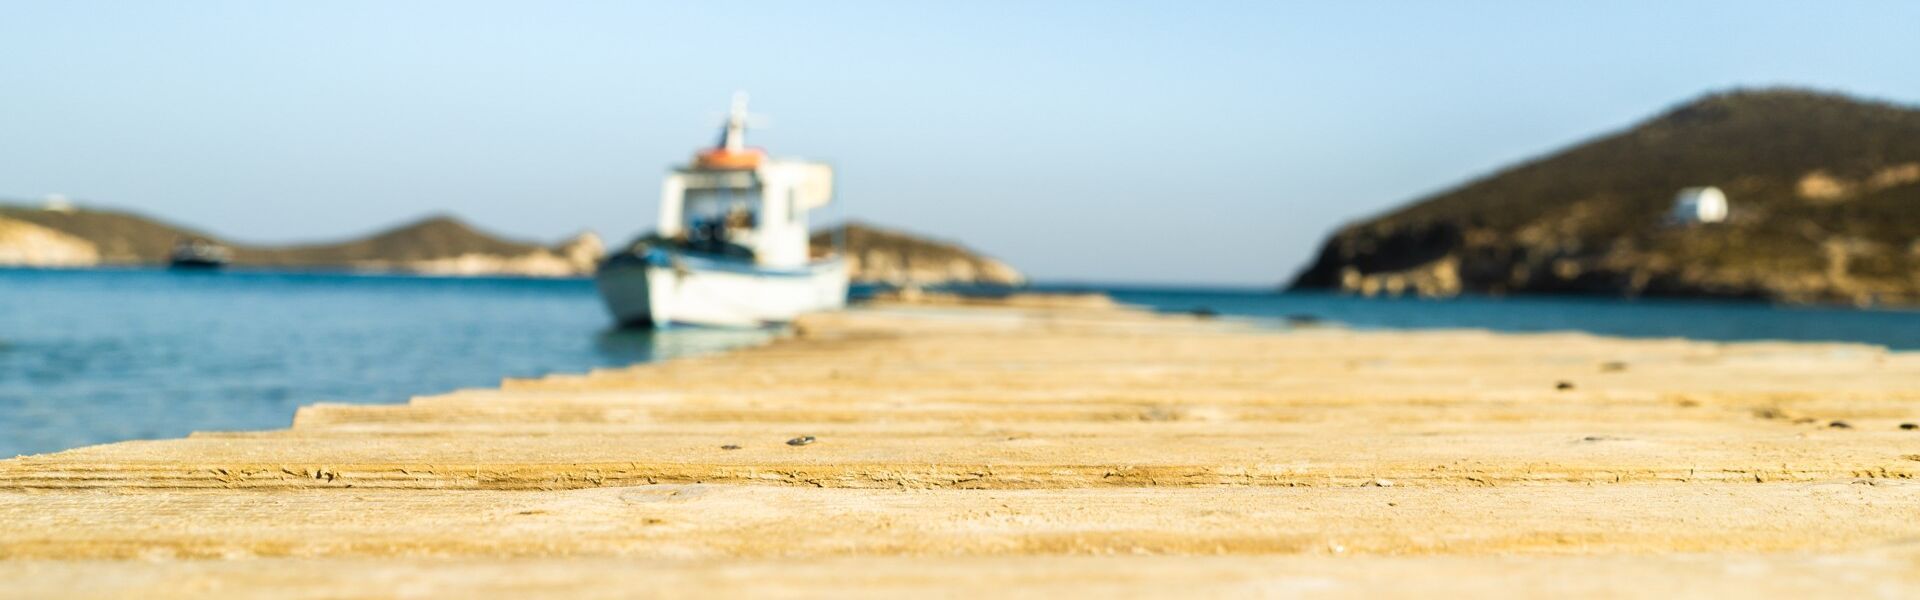 Livadi Geranou beach, Patmos